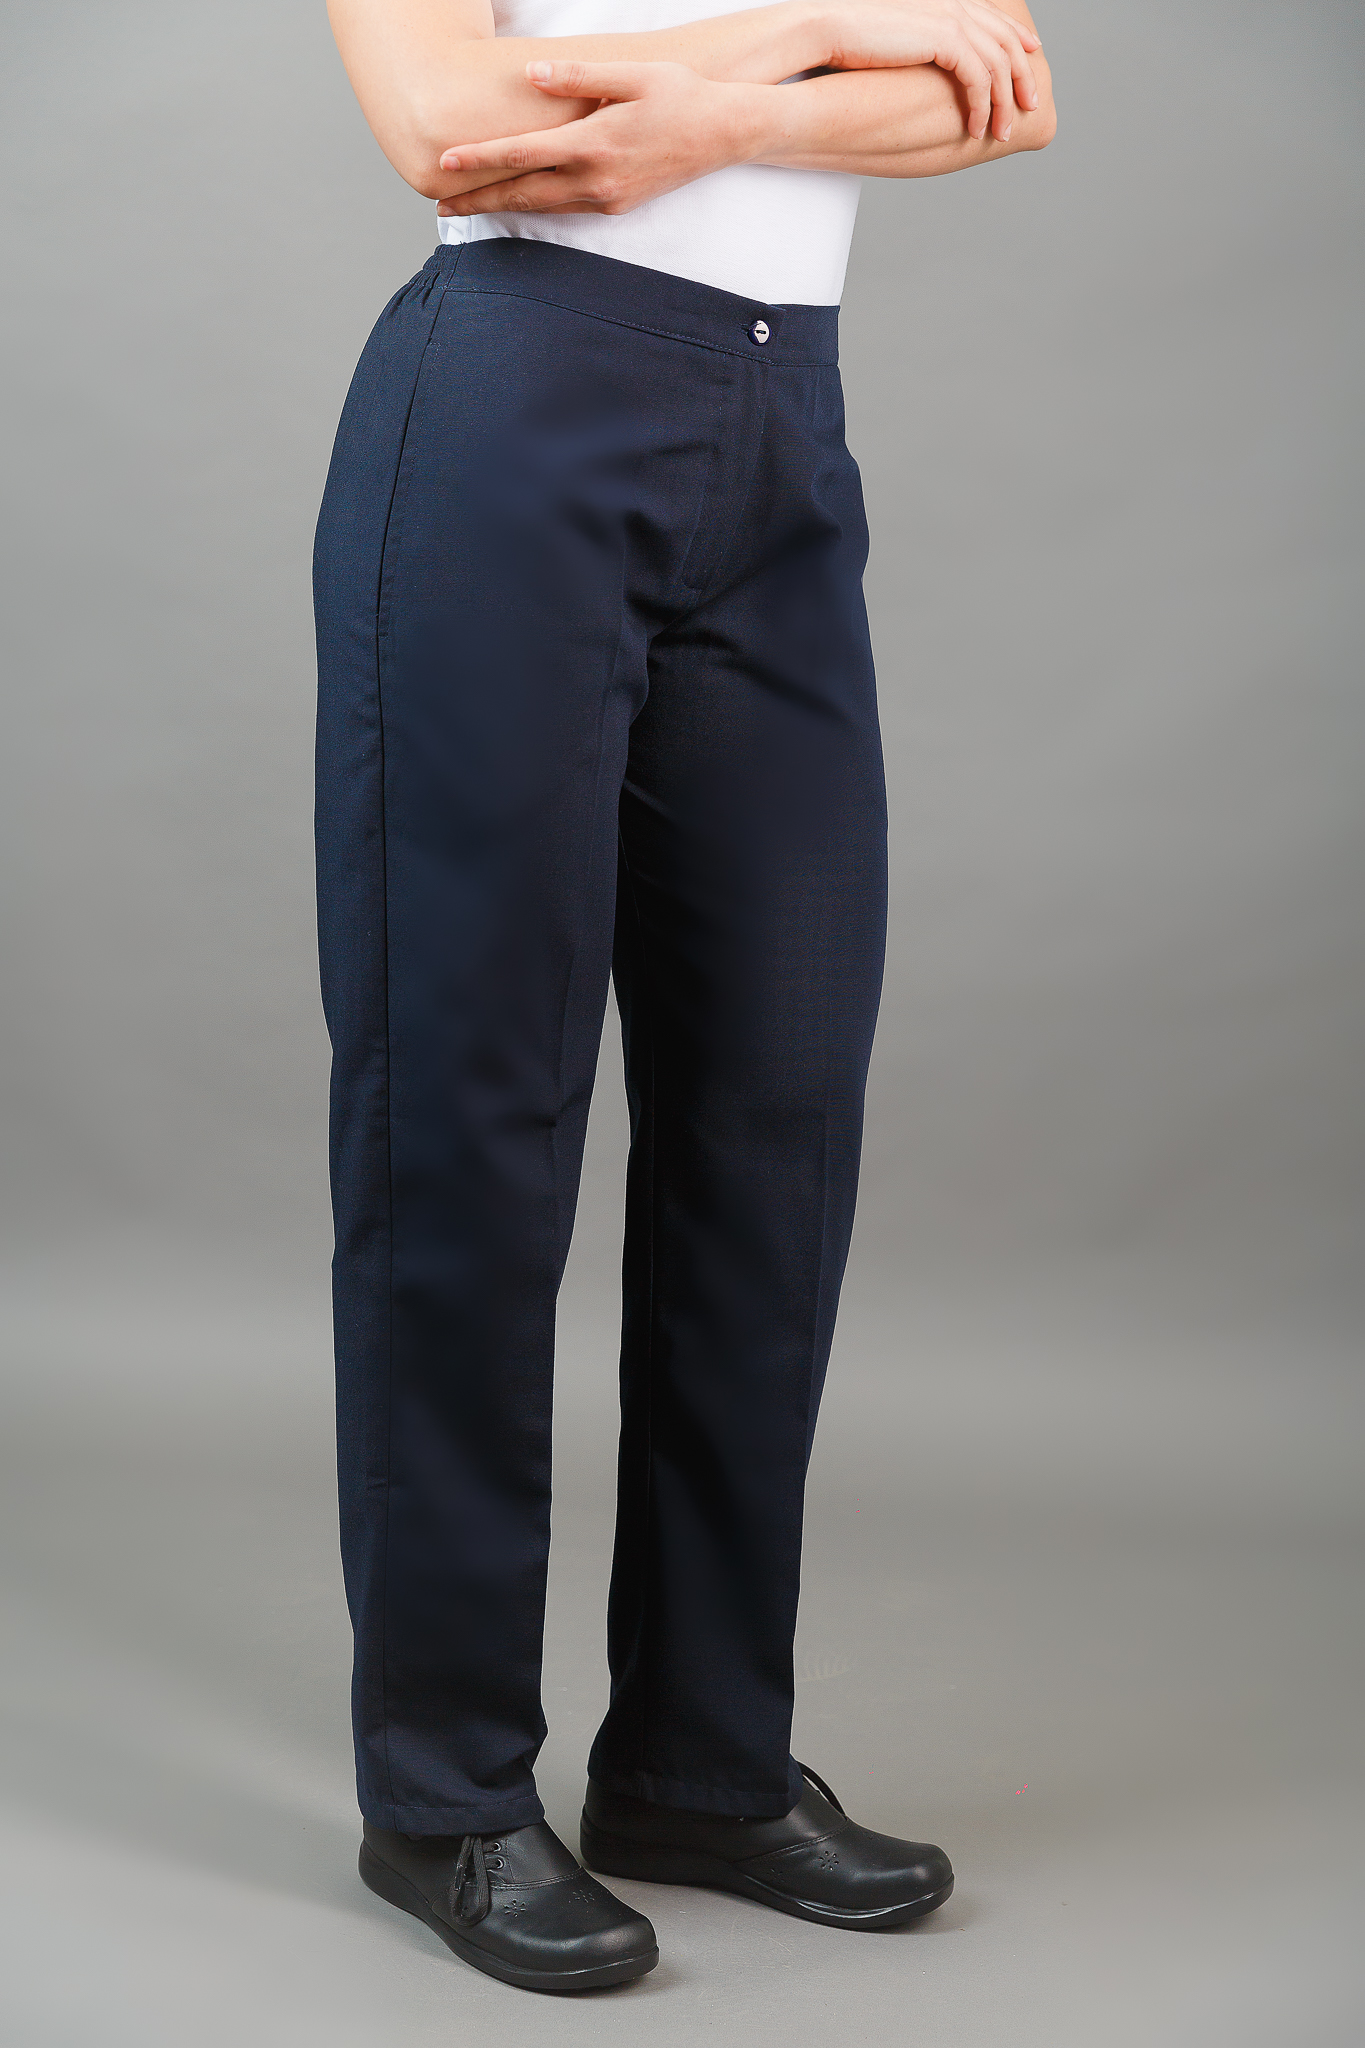 Pantalón labroral de mujer azul marino Lourdes - Uniformes de trabajo